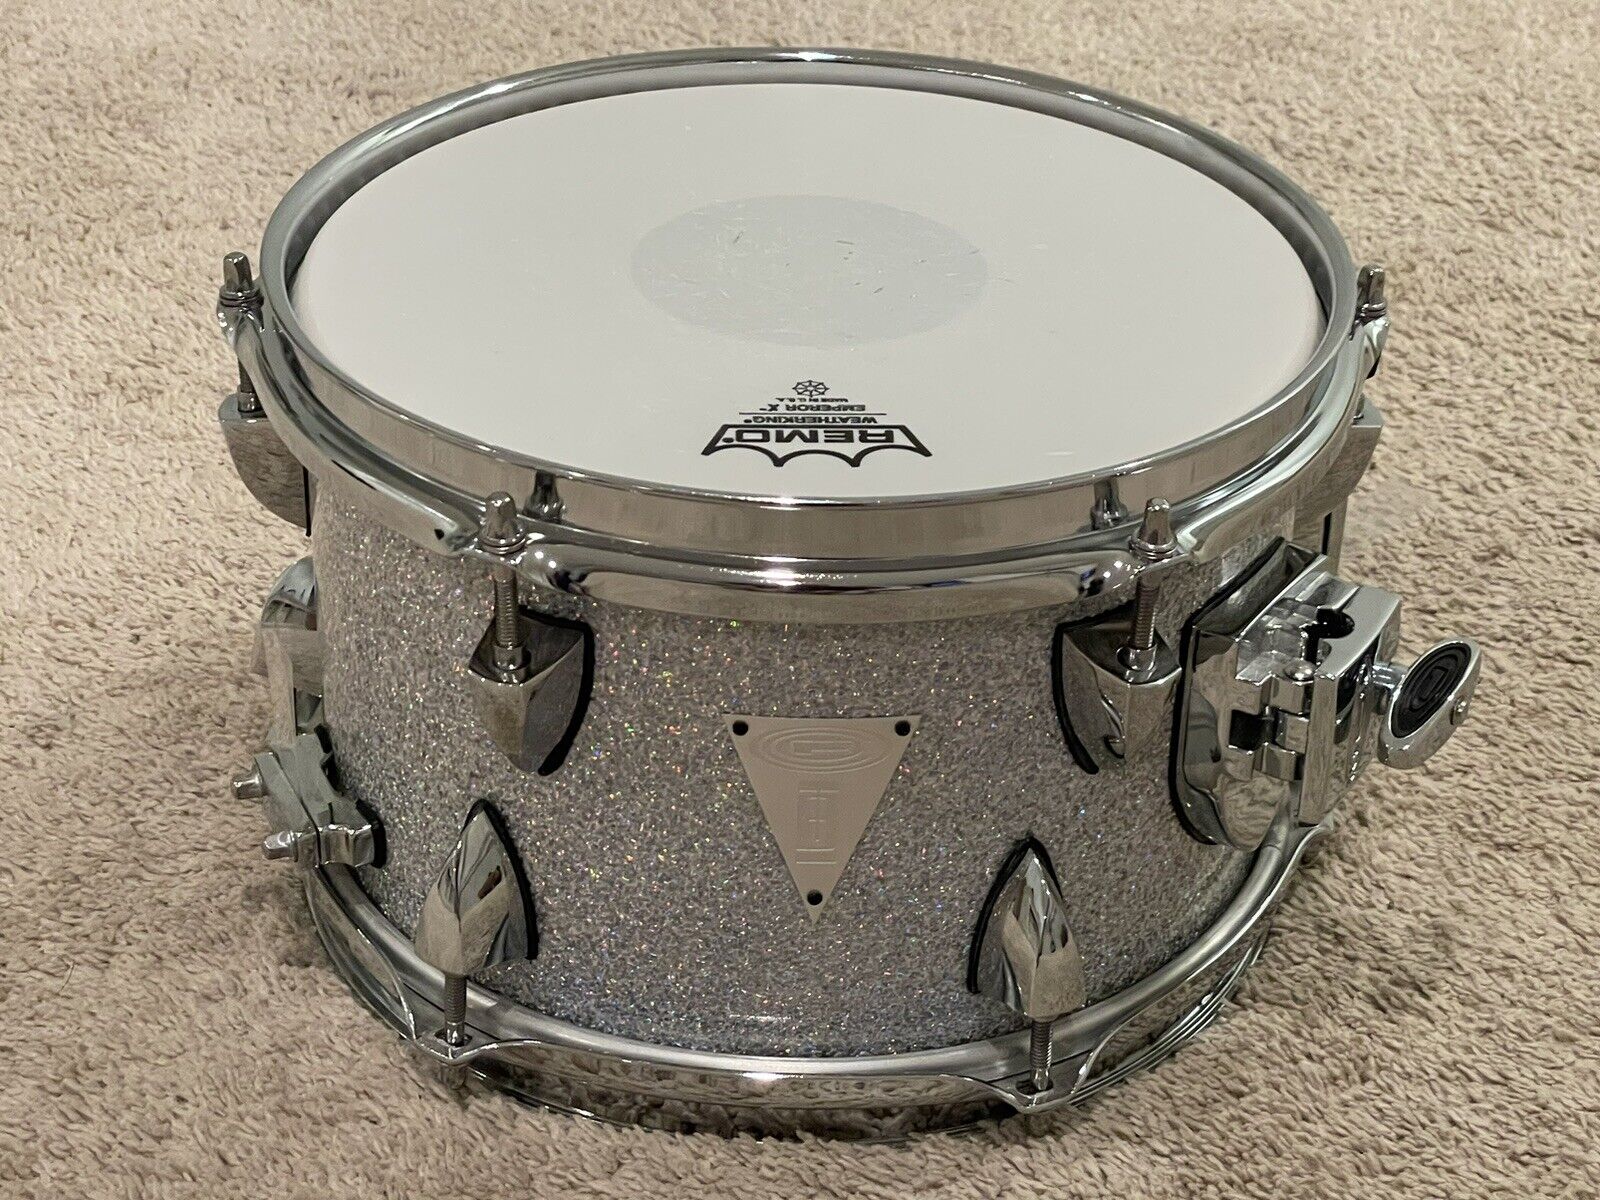 OCDP 10 X 6.5” Snare Drum Travis Barker Signature Model Drums Drumset Side 3